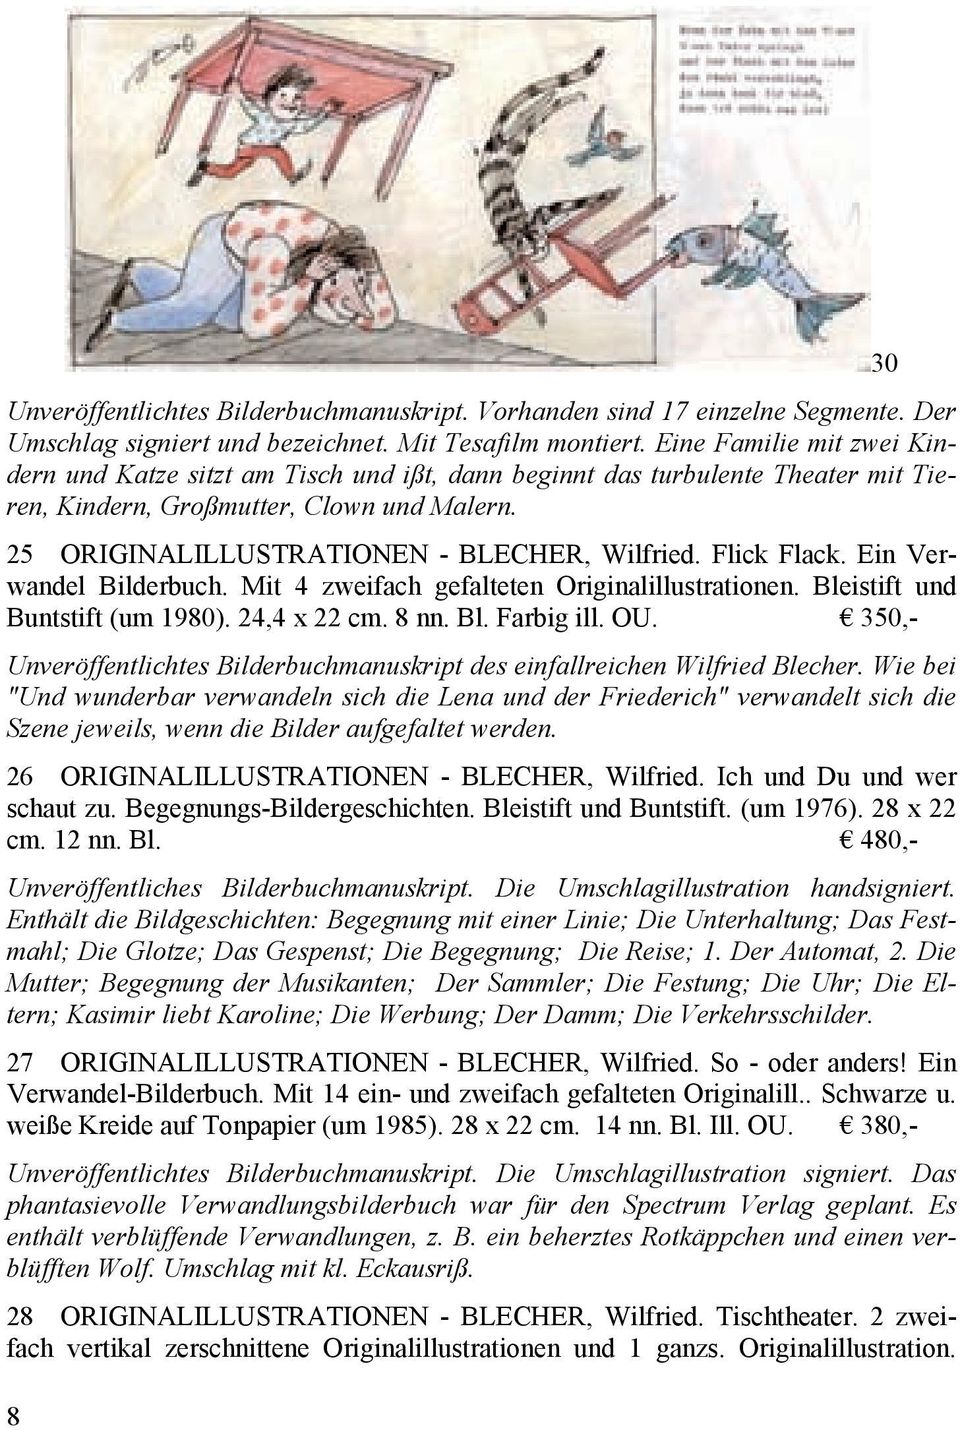 Flick Flack. Ein Verwandel Bilderbuch. Mit 4 zweifach gefalteten Originalillustrationen. Bleistift und Buntstift (um 1980). 24,4 x 22 cm. 8 nn. Bl. Farbig ill. OU.